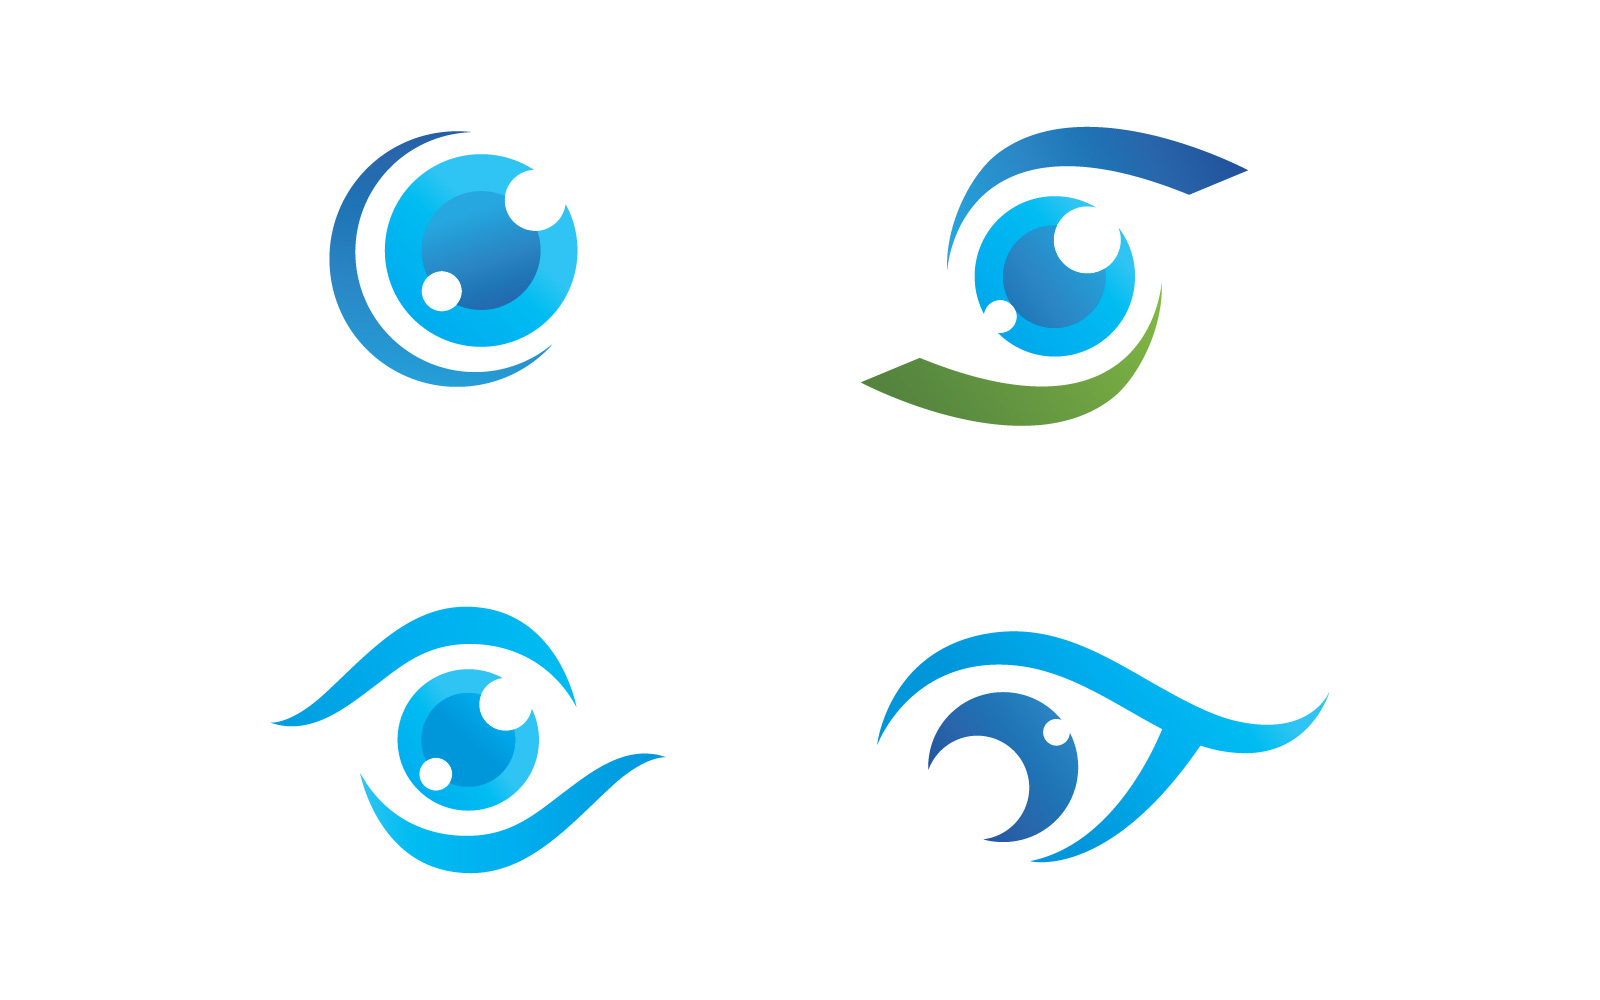 Eye - logo by samera on Dribbble